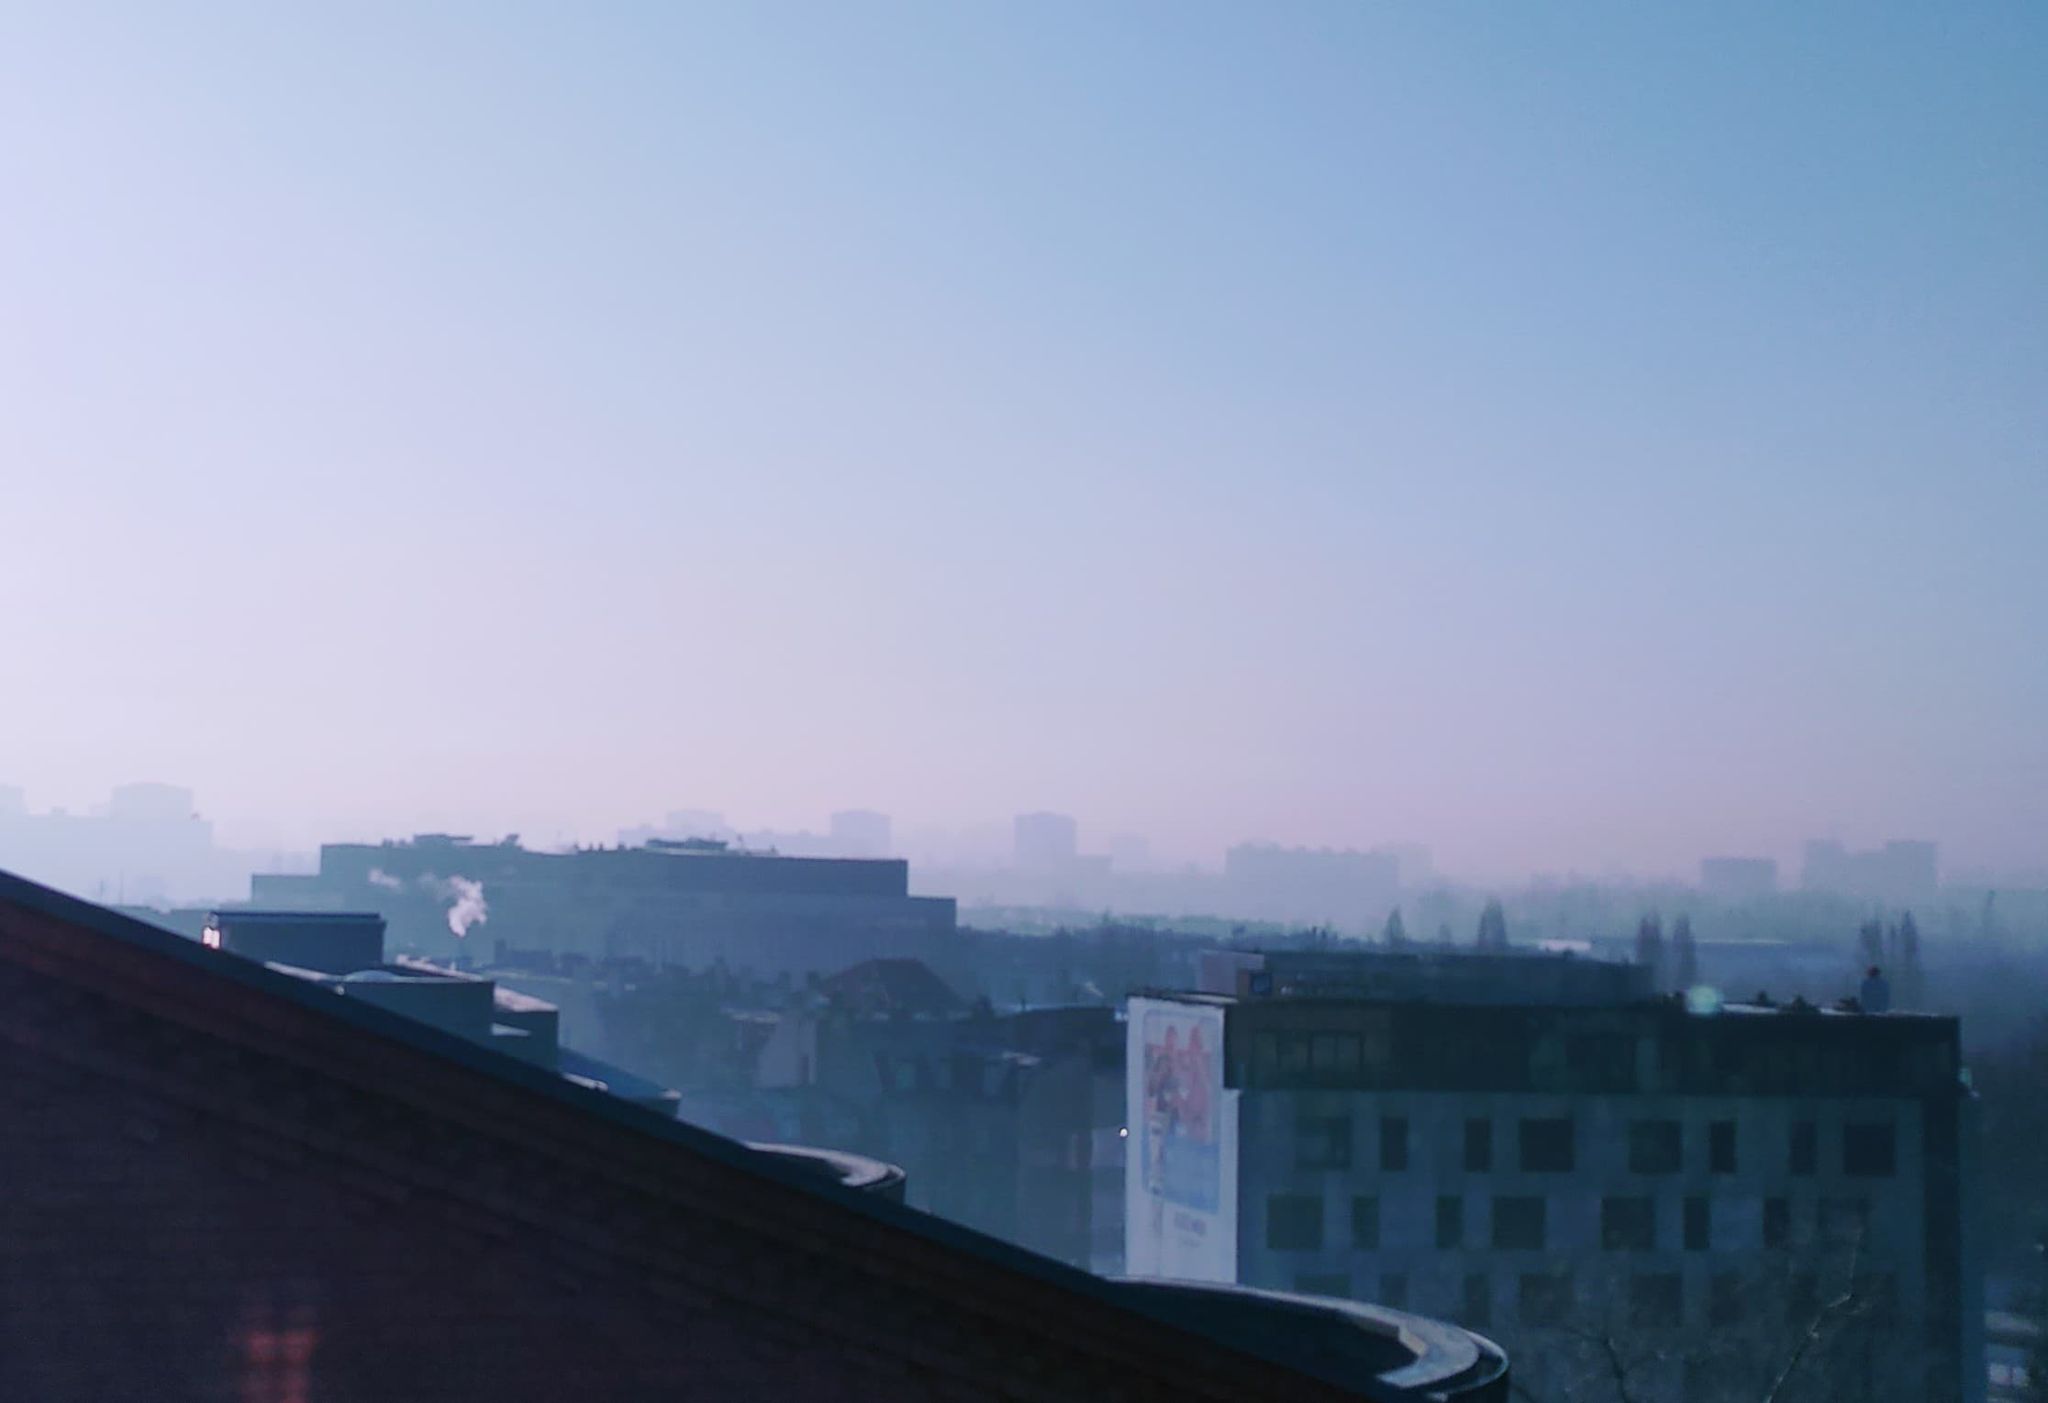 “Aż czuć jak śmierdzi” – zła jakość powietrza w Poznaniu. Wysłano Alert RCB